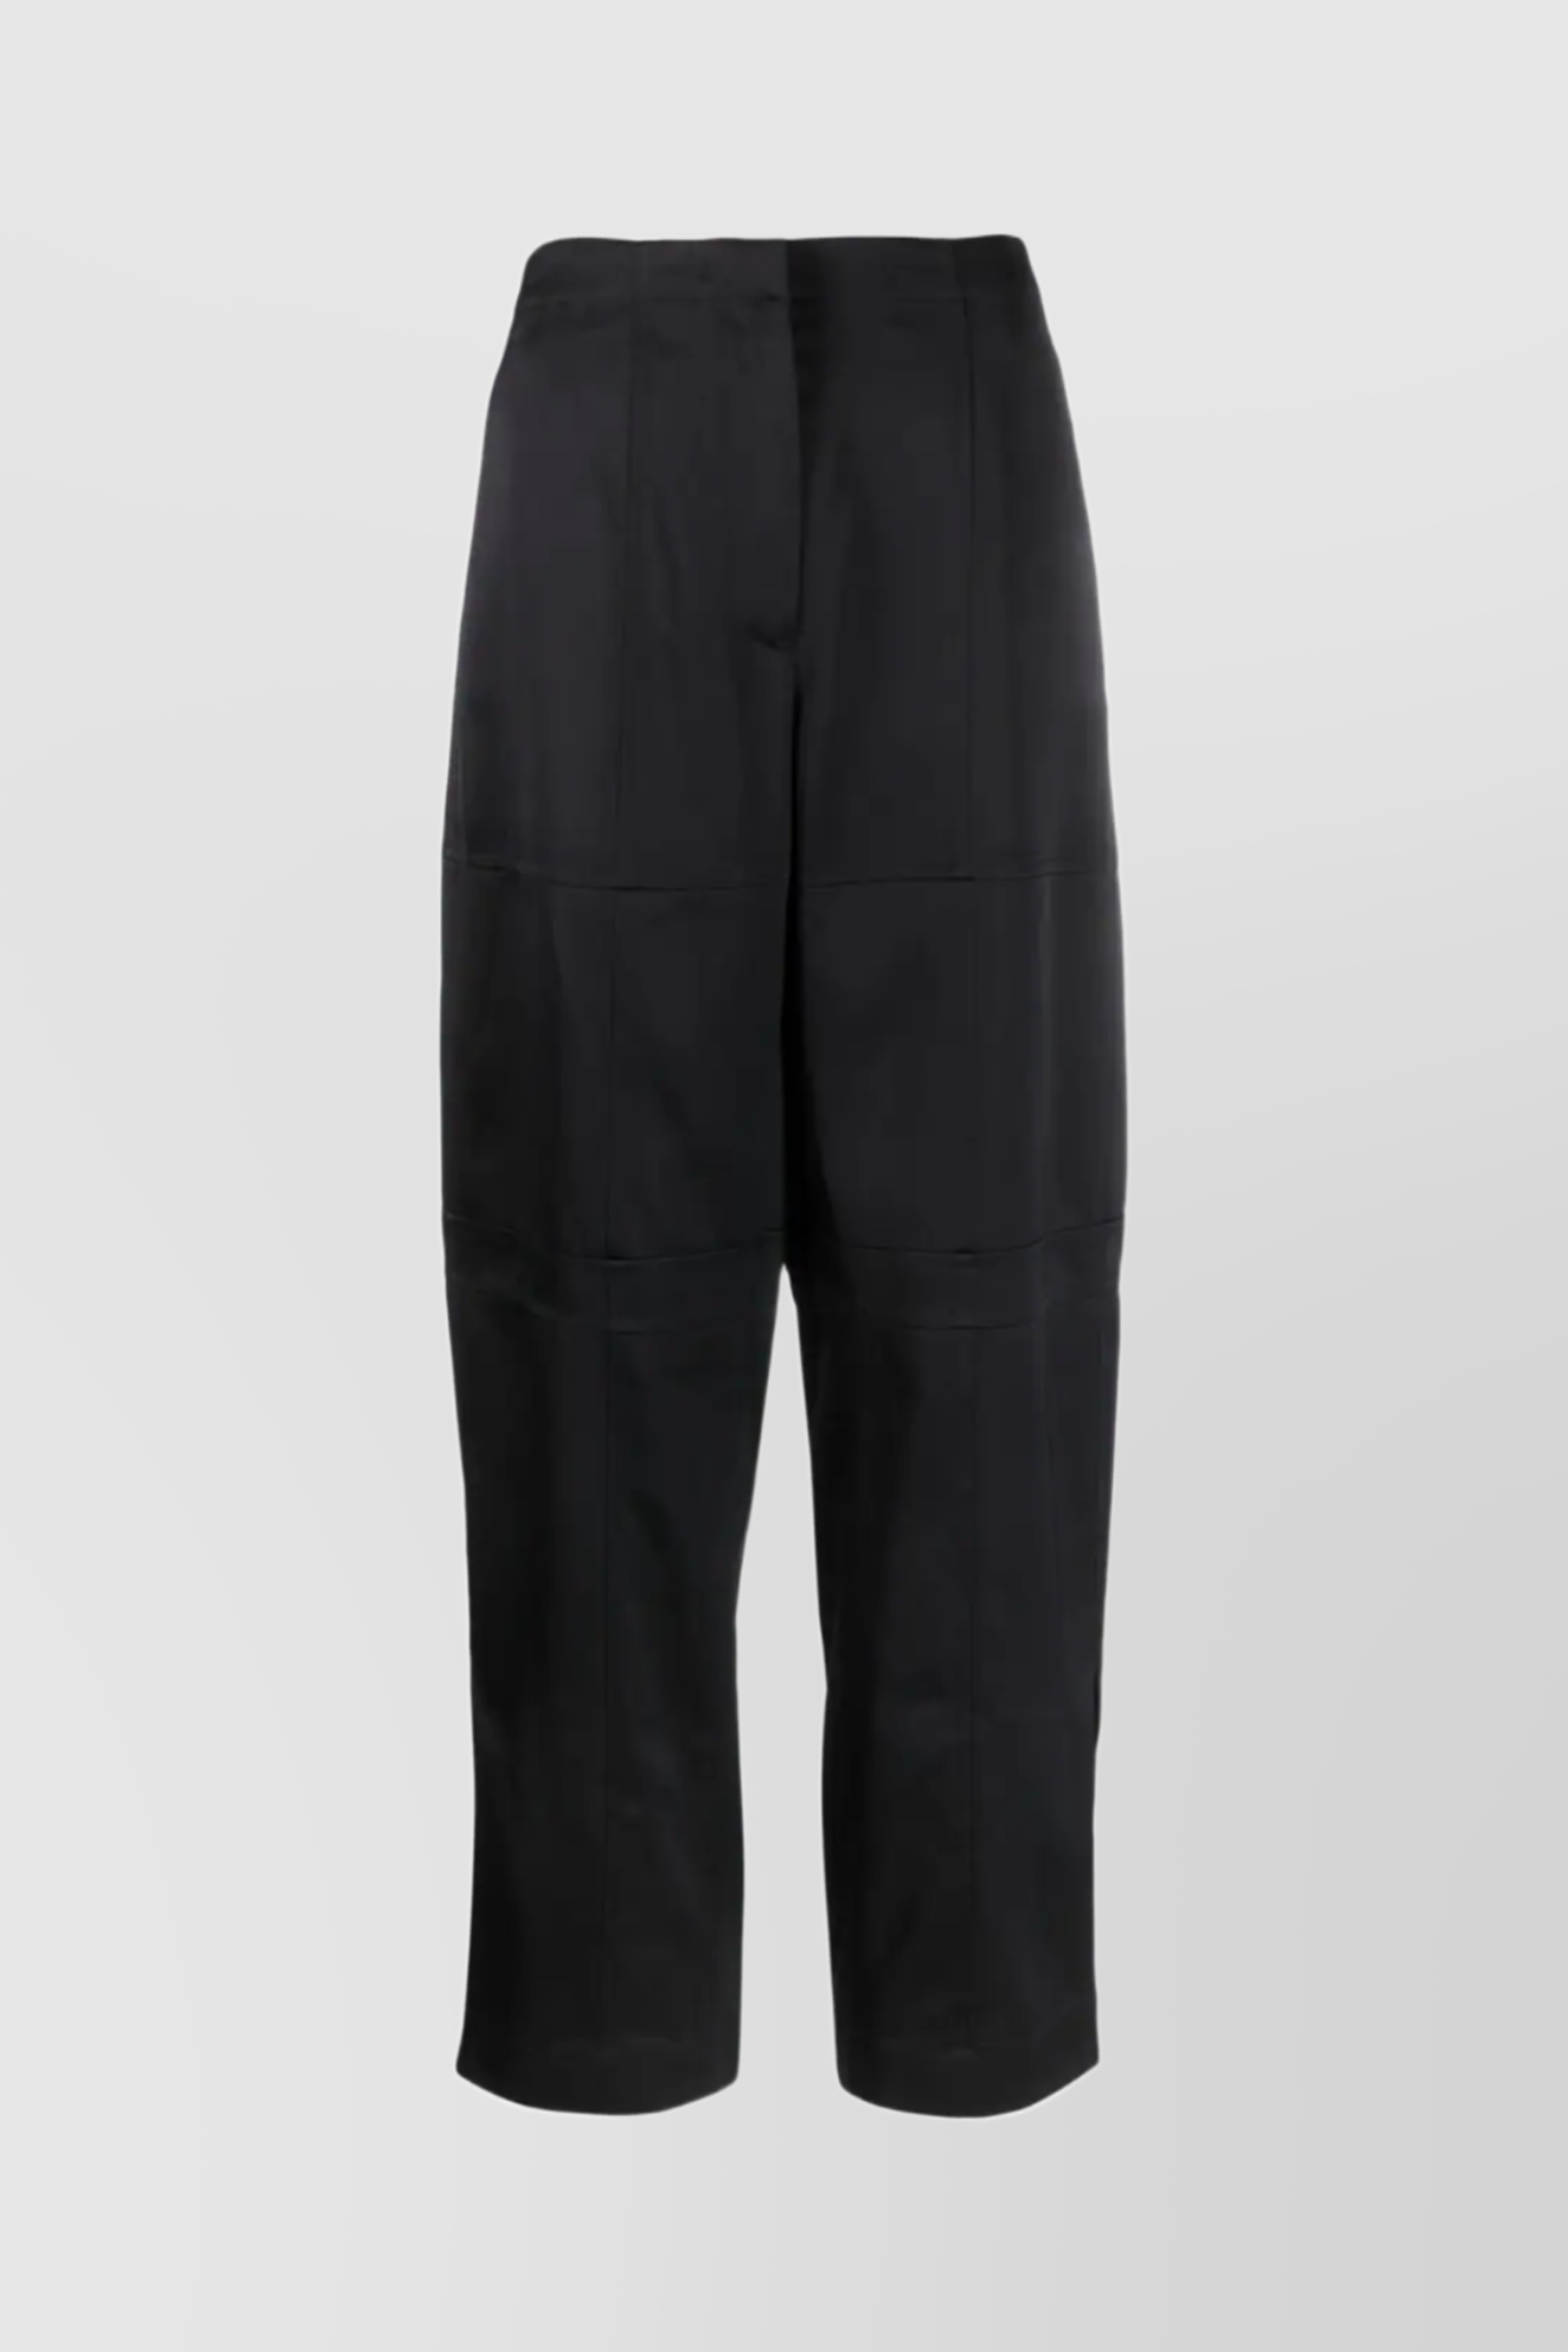 Jil Sander Twill Straight-leg Trousers In Black